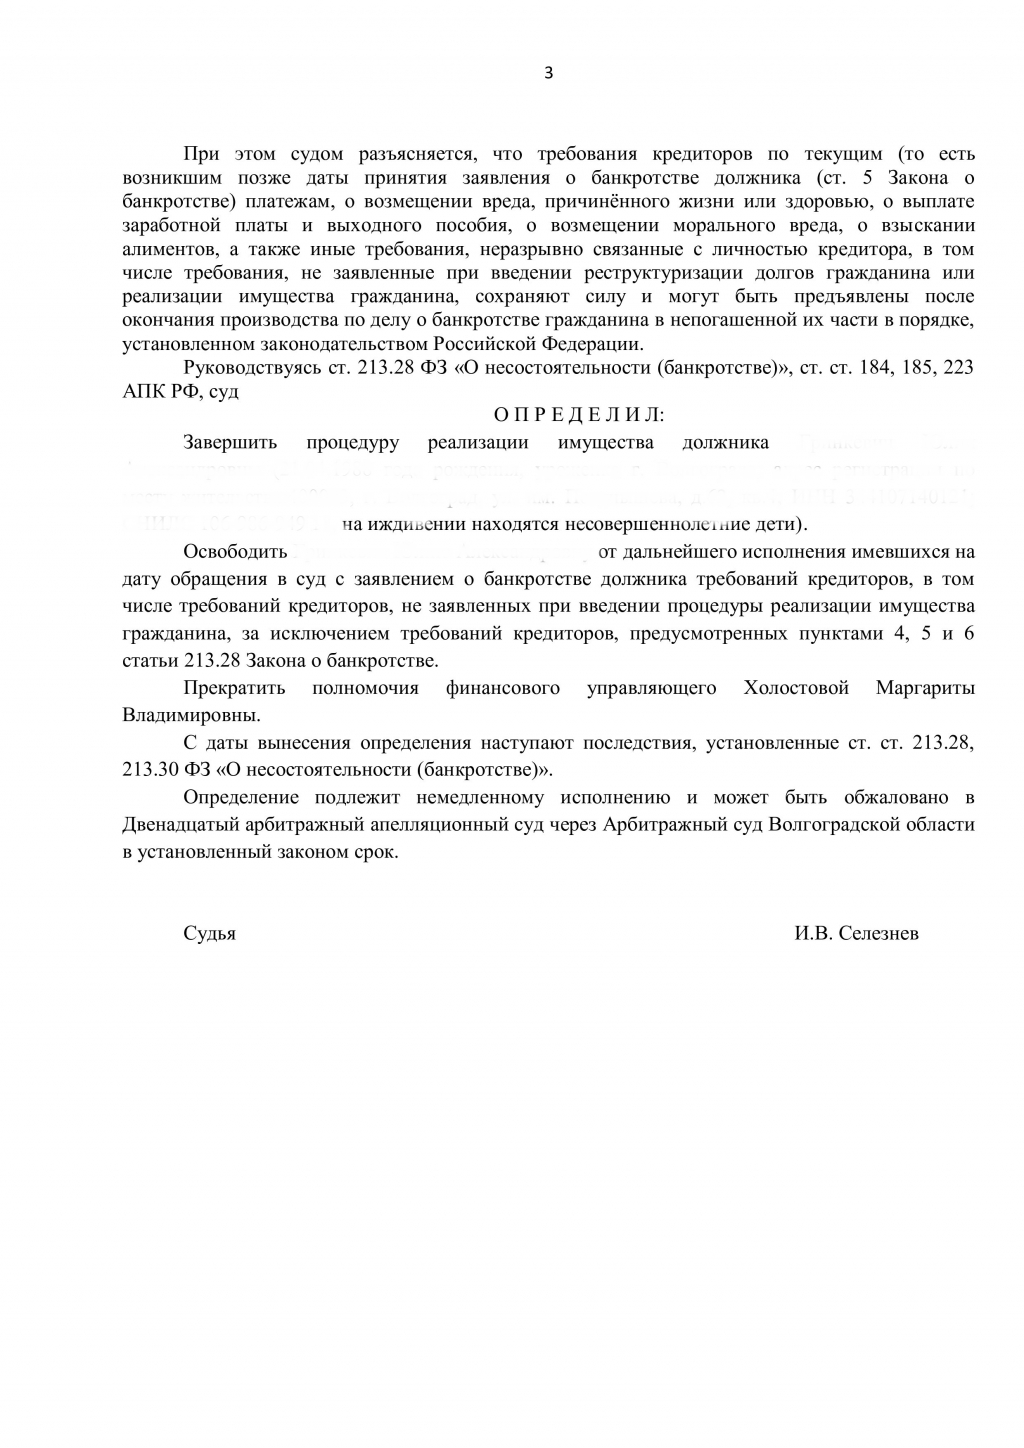 Банкрот Консалт - дело № А12-39274/2019